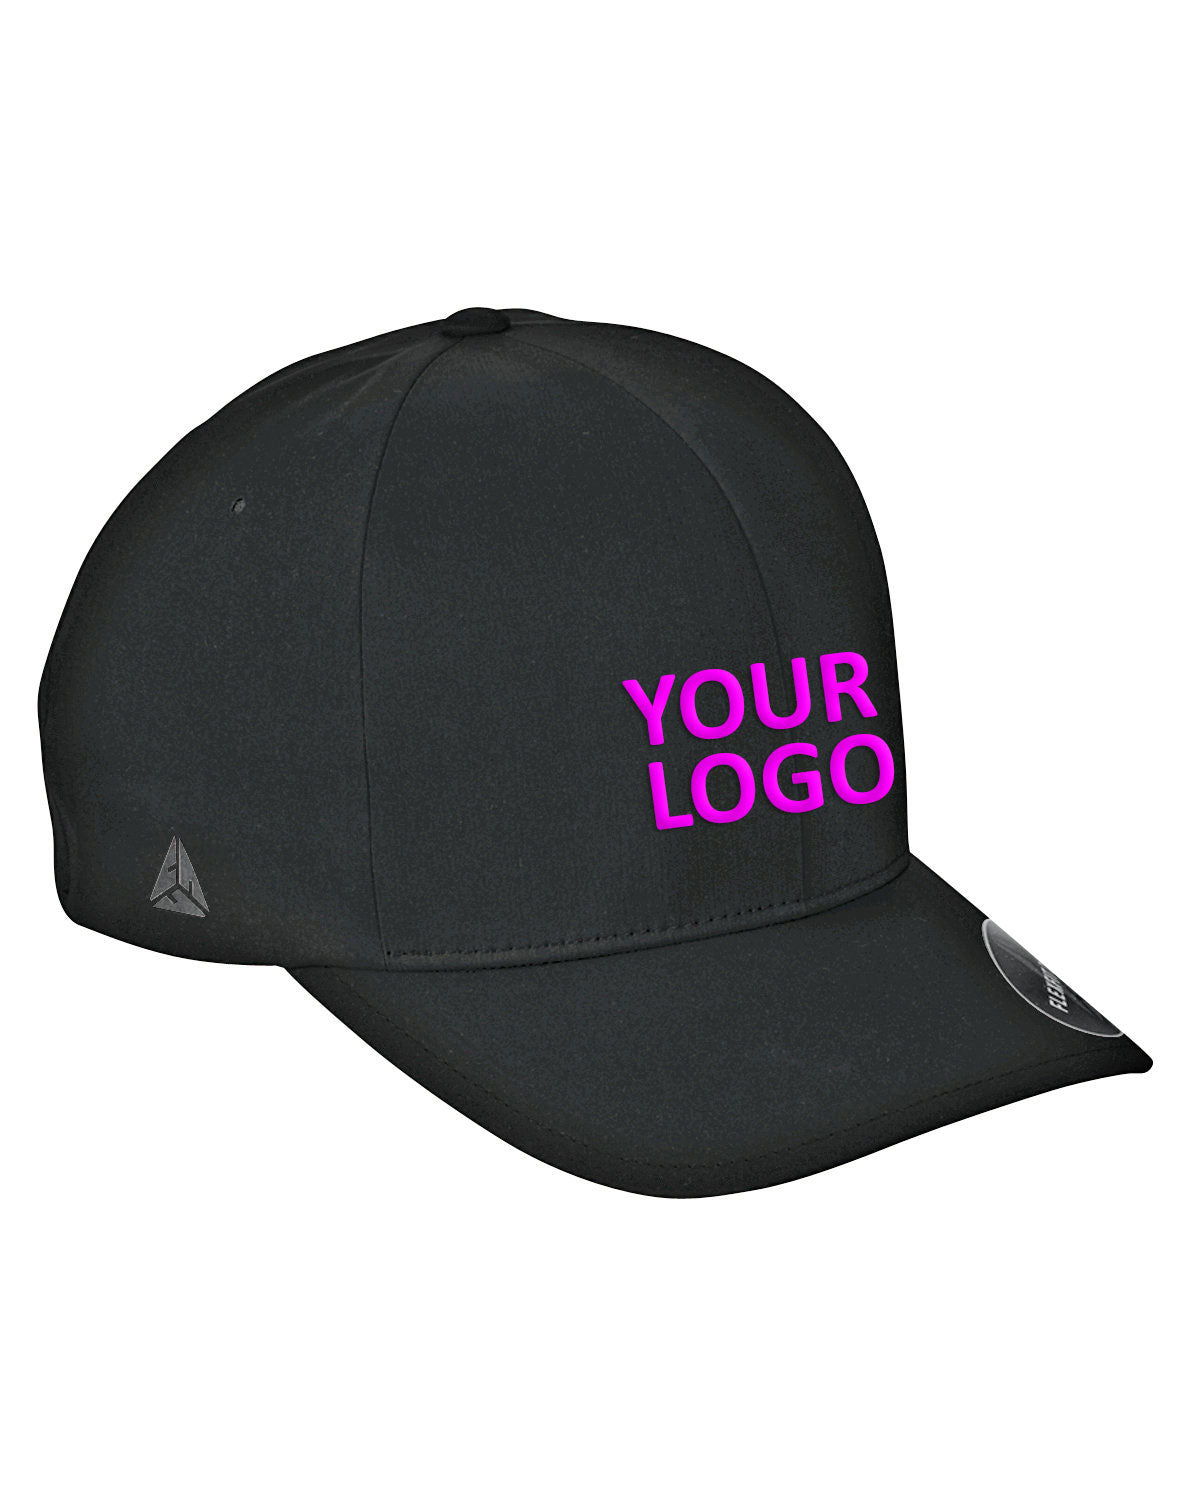 flexfit_yp180_black_company_logo_headwear